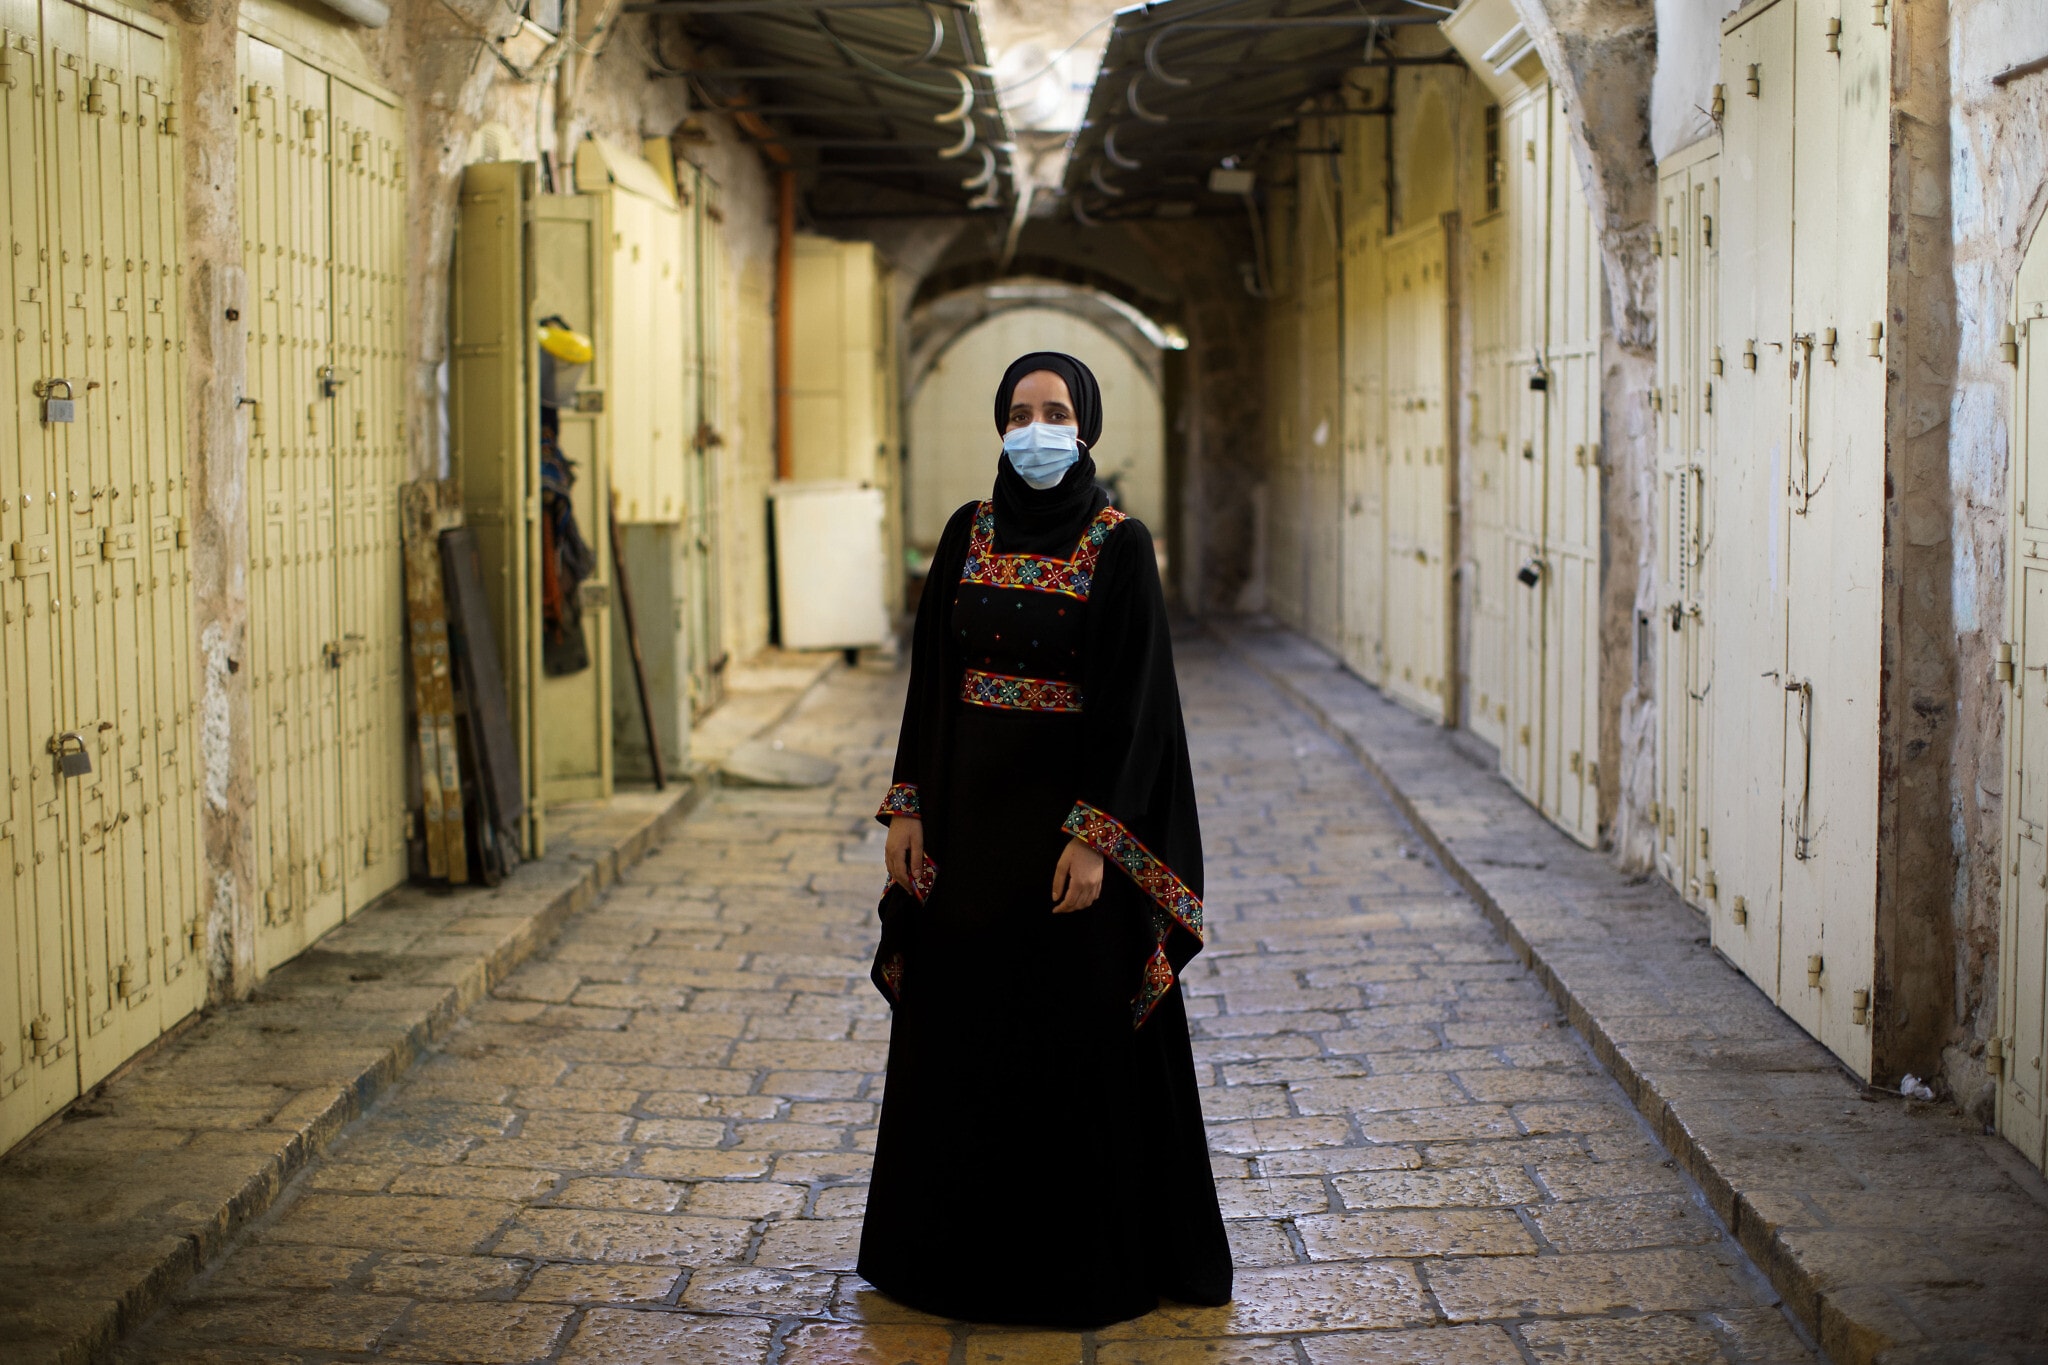 אישה מוסלמית בסמטאות השוממות של העיר העתיקה בירושלים, יולי 2020, אילוסטרציה, למצולמת אין קשר לנאמר בכתבה (צילום: AP Photo/Oded Balilty)